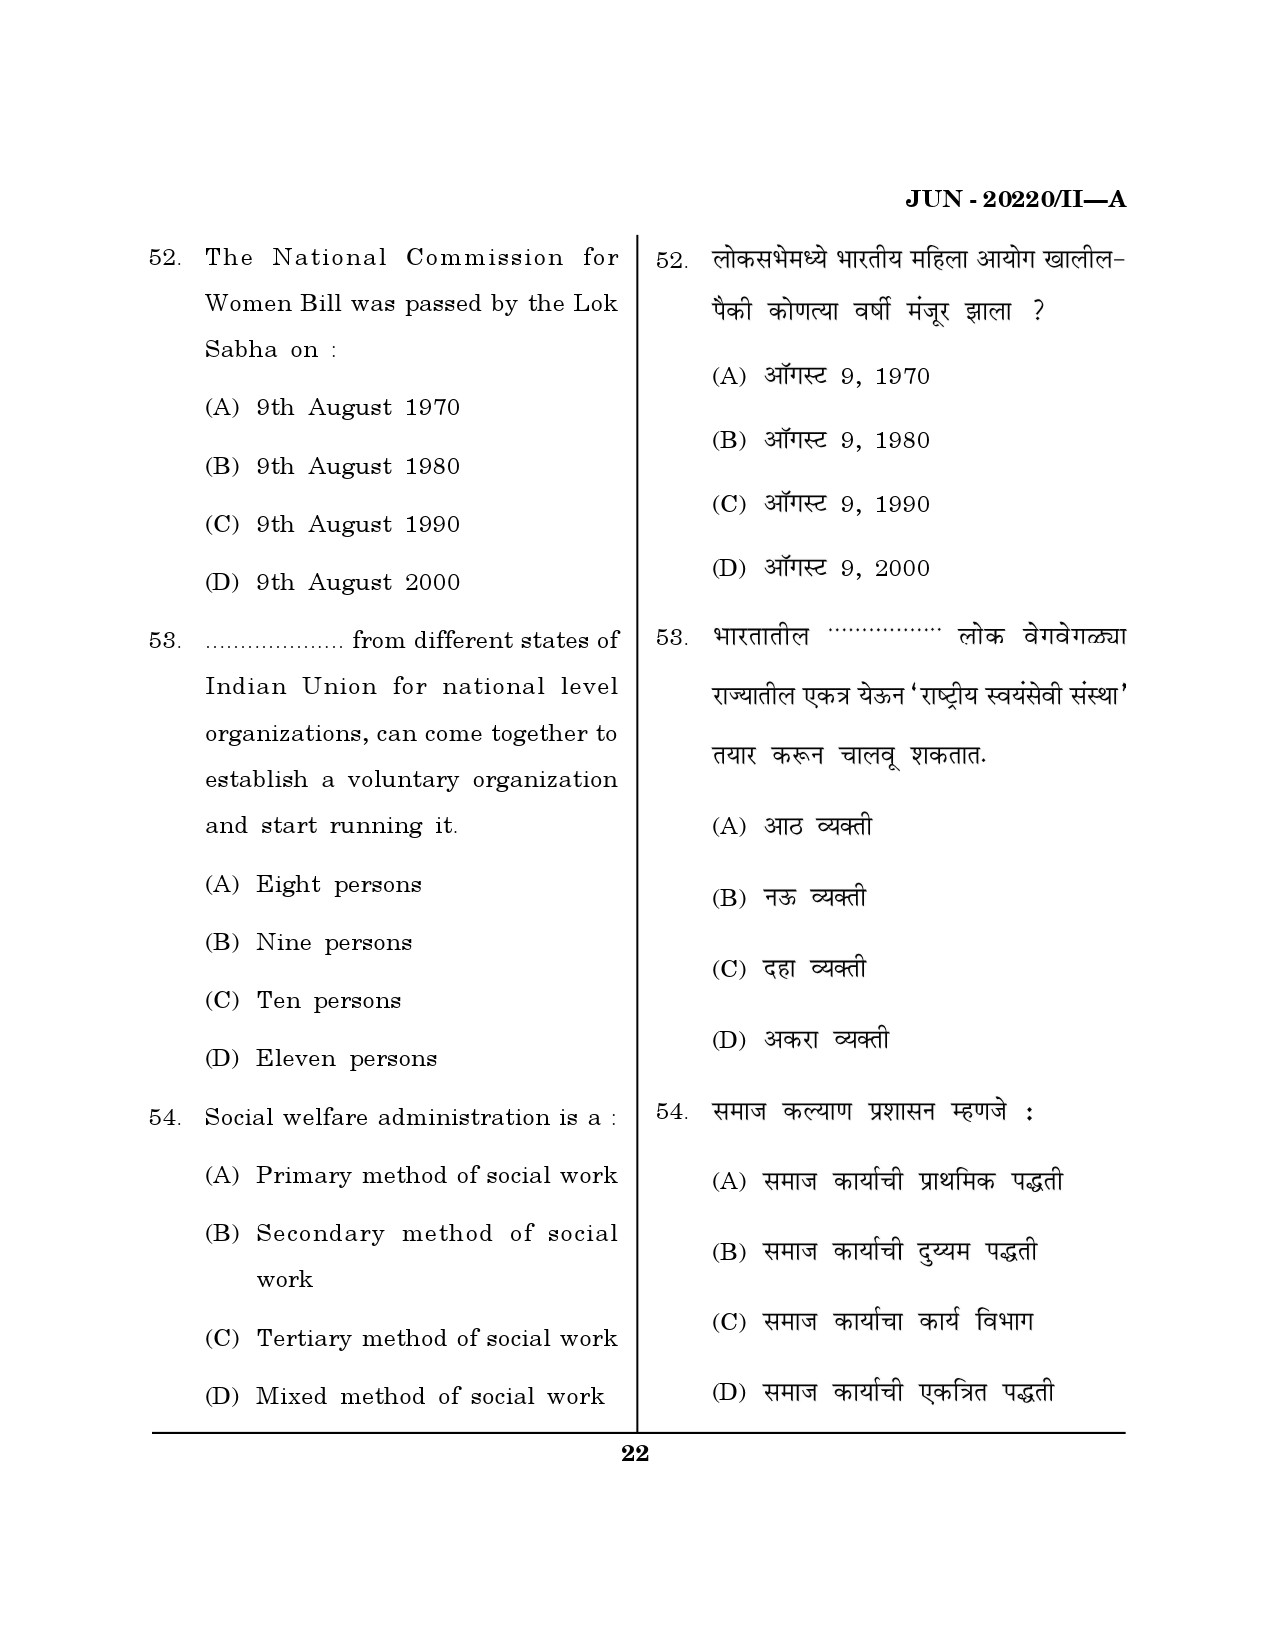 Maharashtra SET Social Work Question Paper II June 2020 21